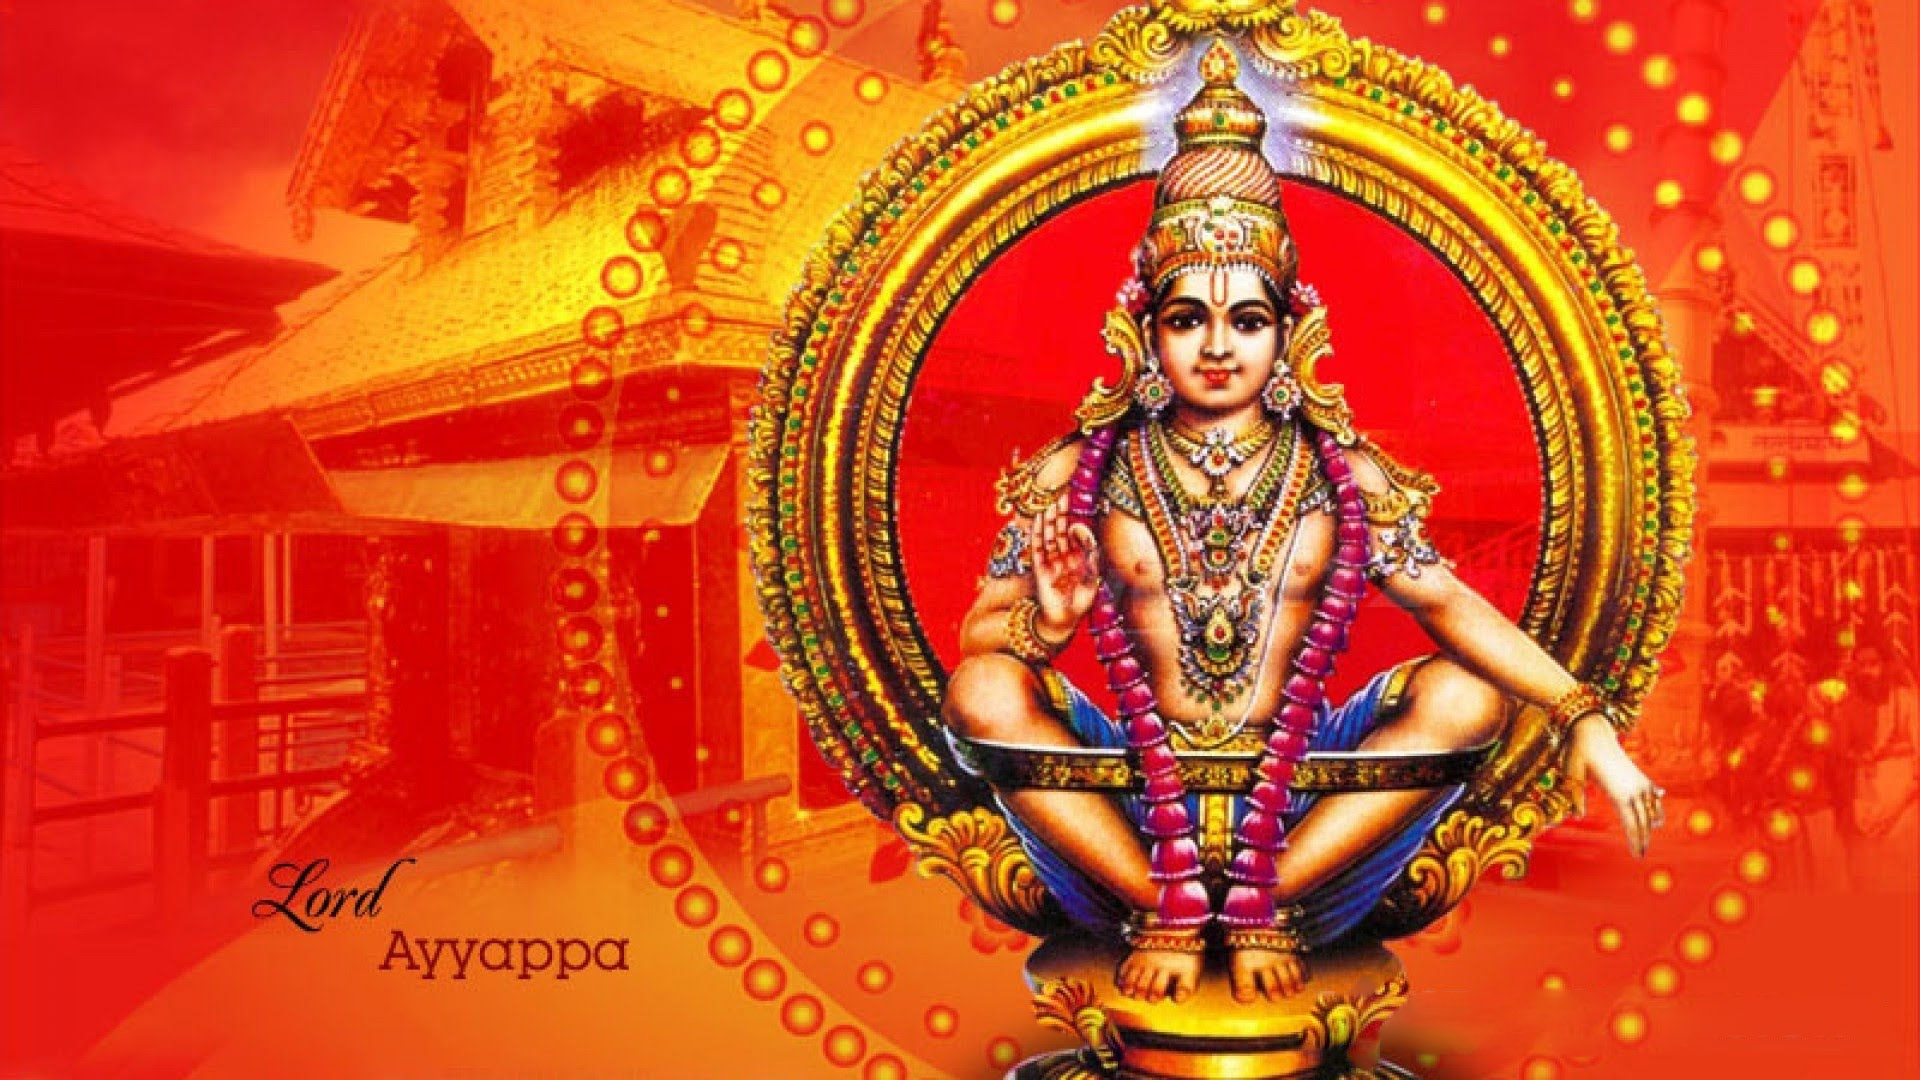 Ayyappa 1080p Hd Images - God HD Wallpapers